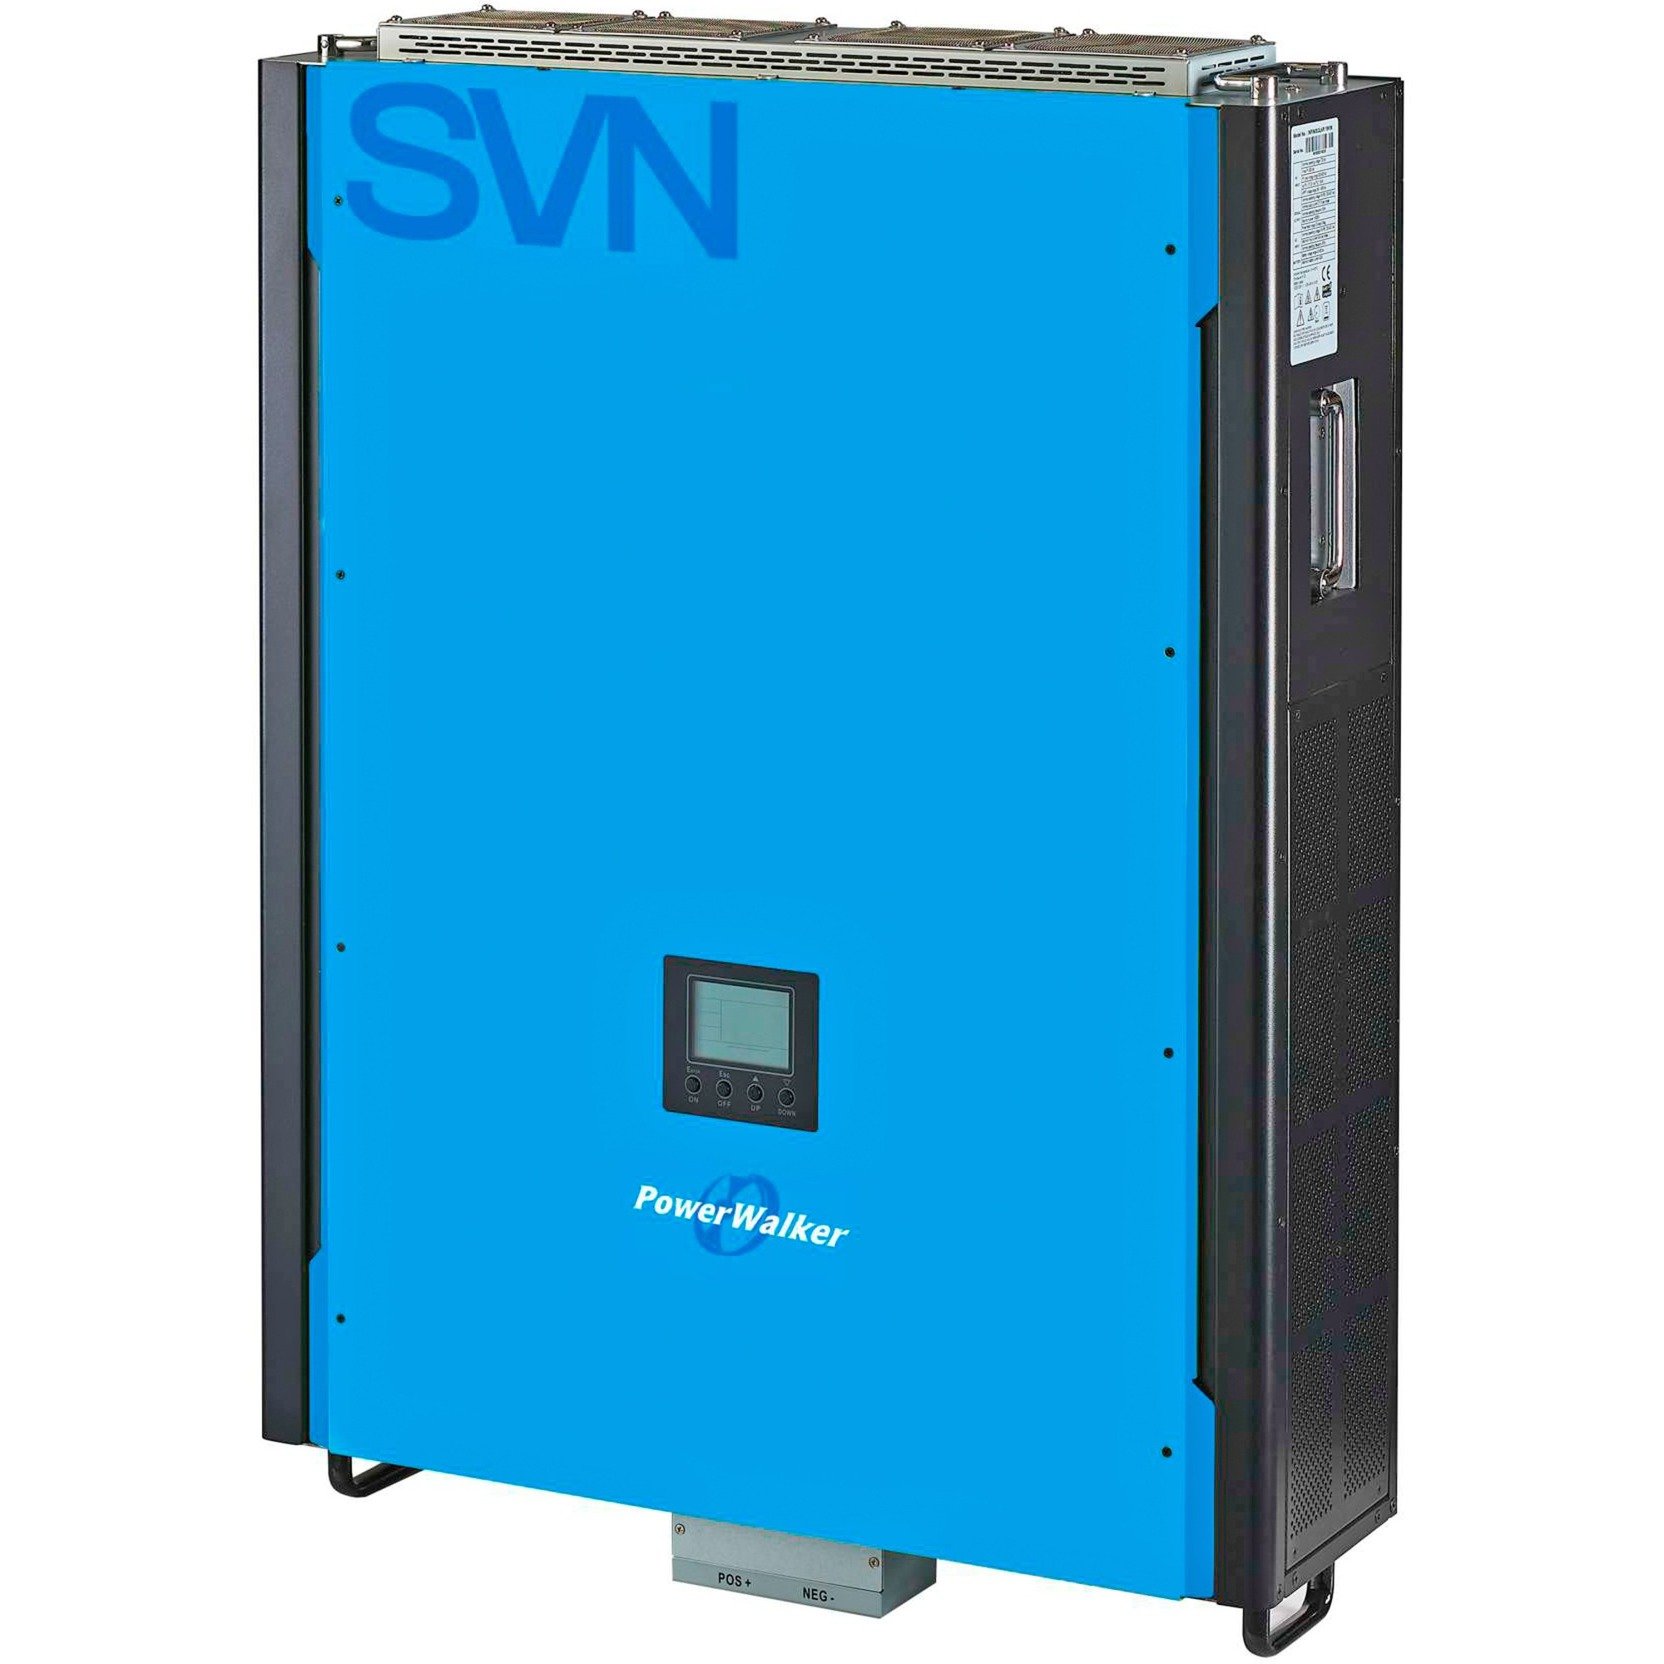 Solar-Wechselrichter 15k SVN OGV 3/3 von BlueWalker